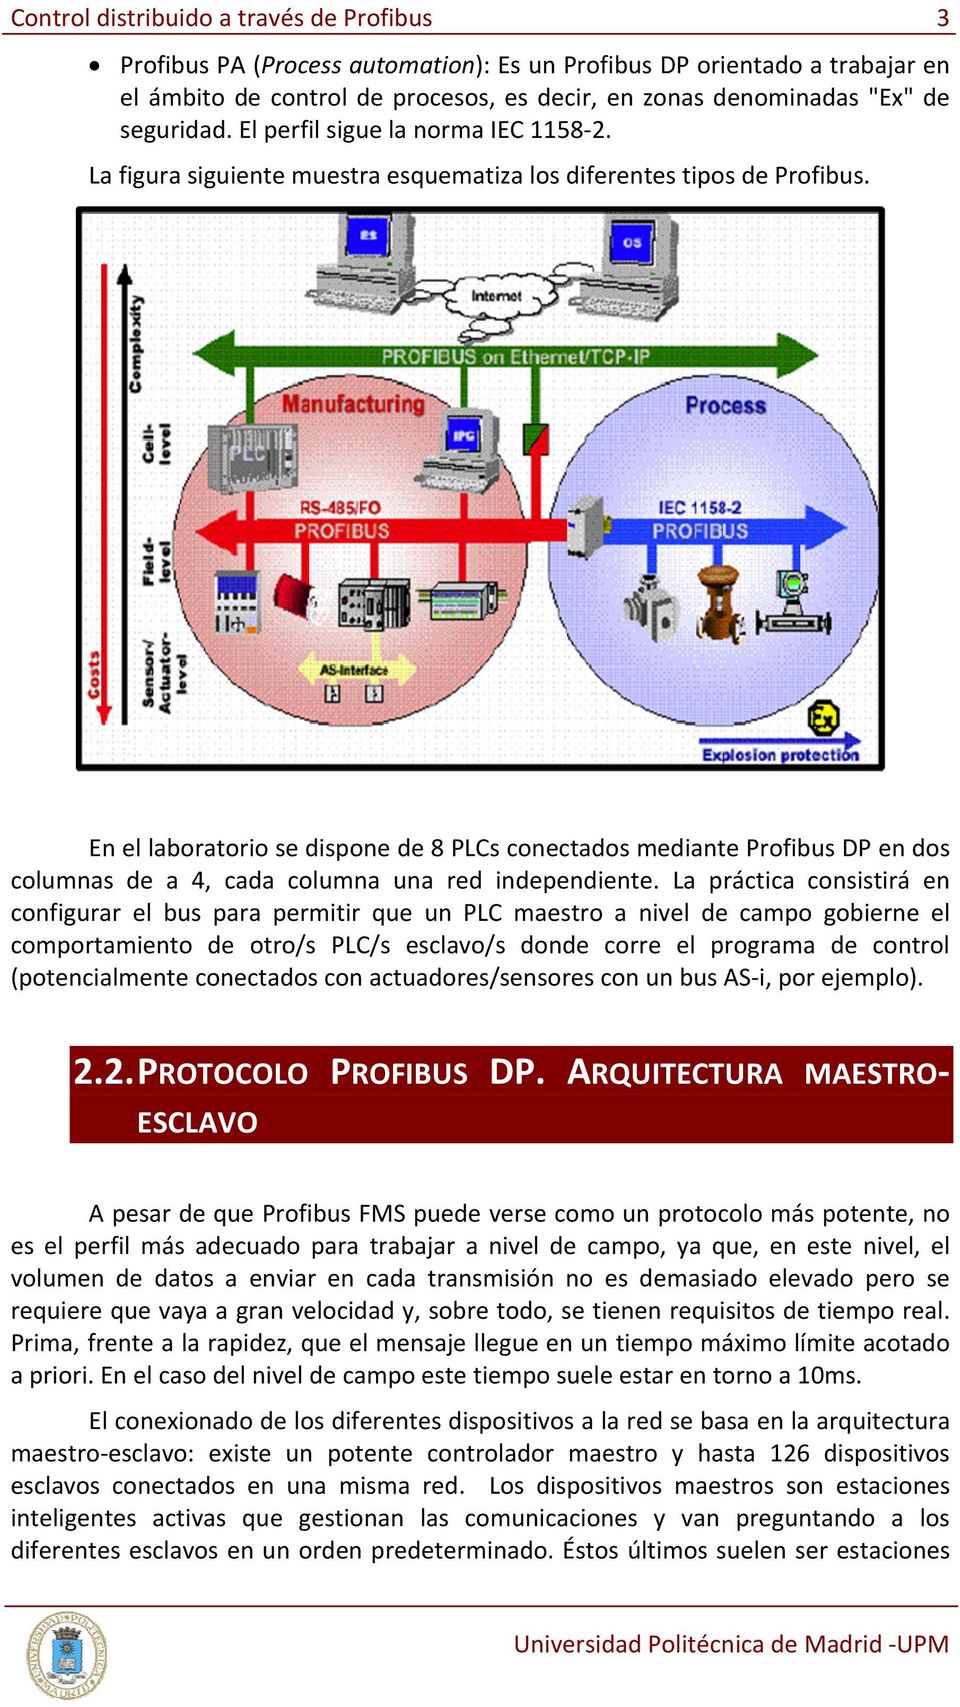 En el laboratorio se dispone de 8 PLCs conectados mediante Profibus DP en dos columnas de a 4, cada columna una red independiente.